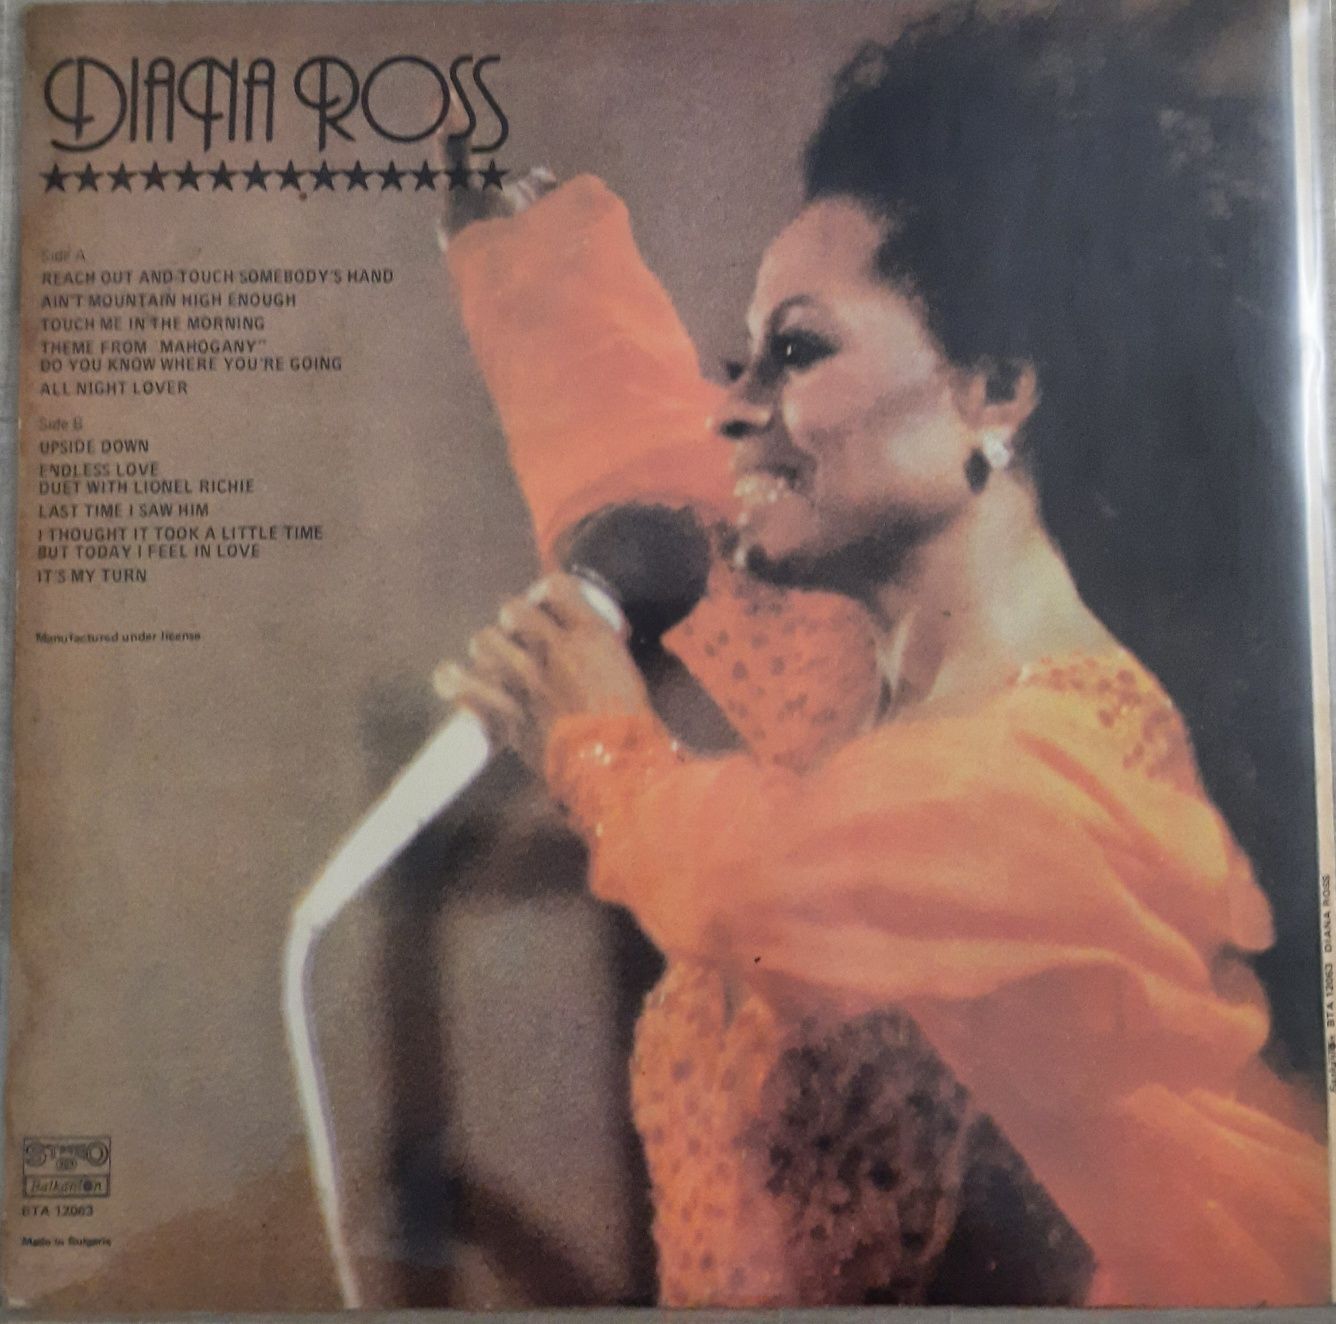 Diana Ross vinyl VG+